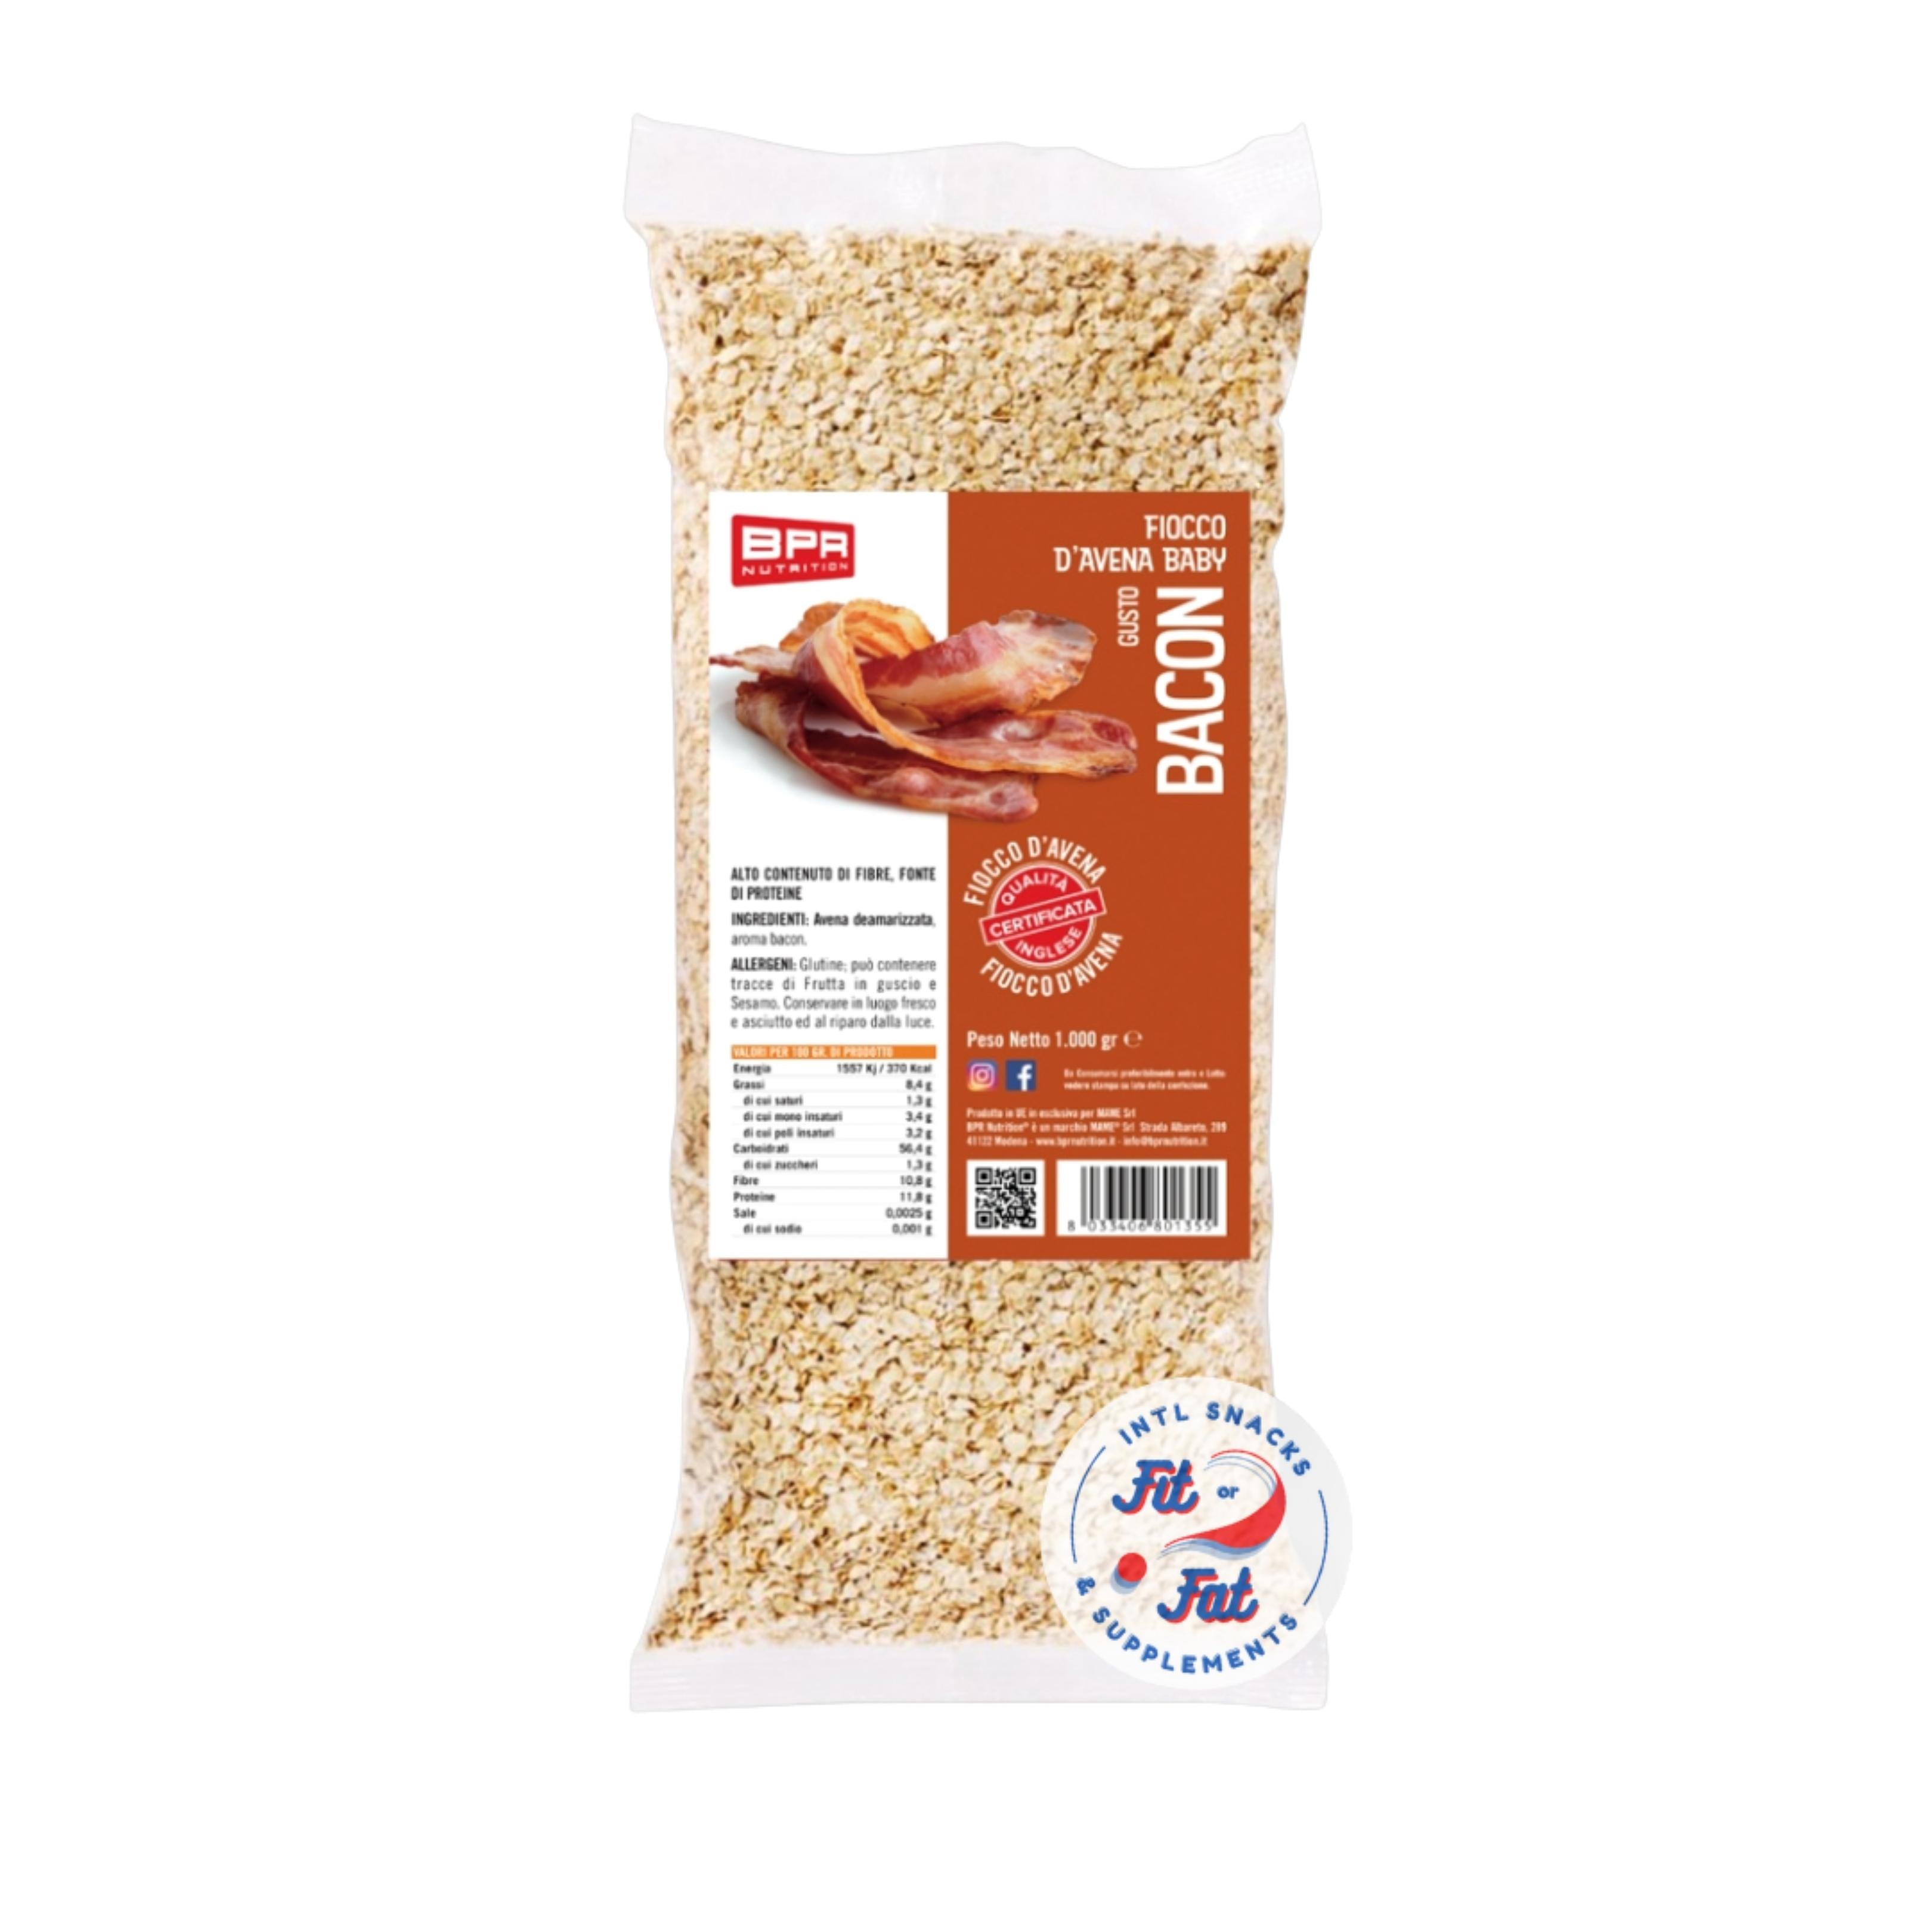 Bpr Nutrition - Fiocco d'Avena Baby Aromatizzato Bacon 1 kg